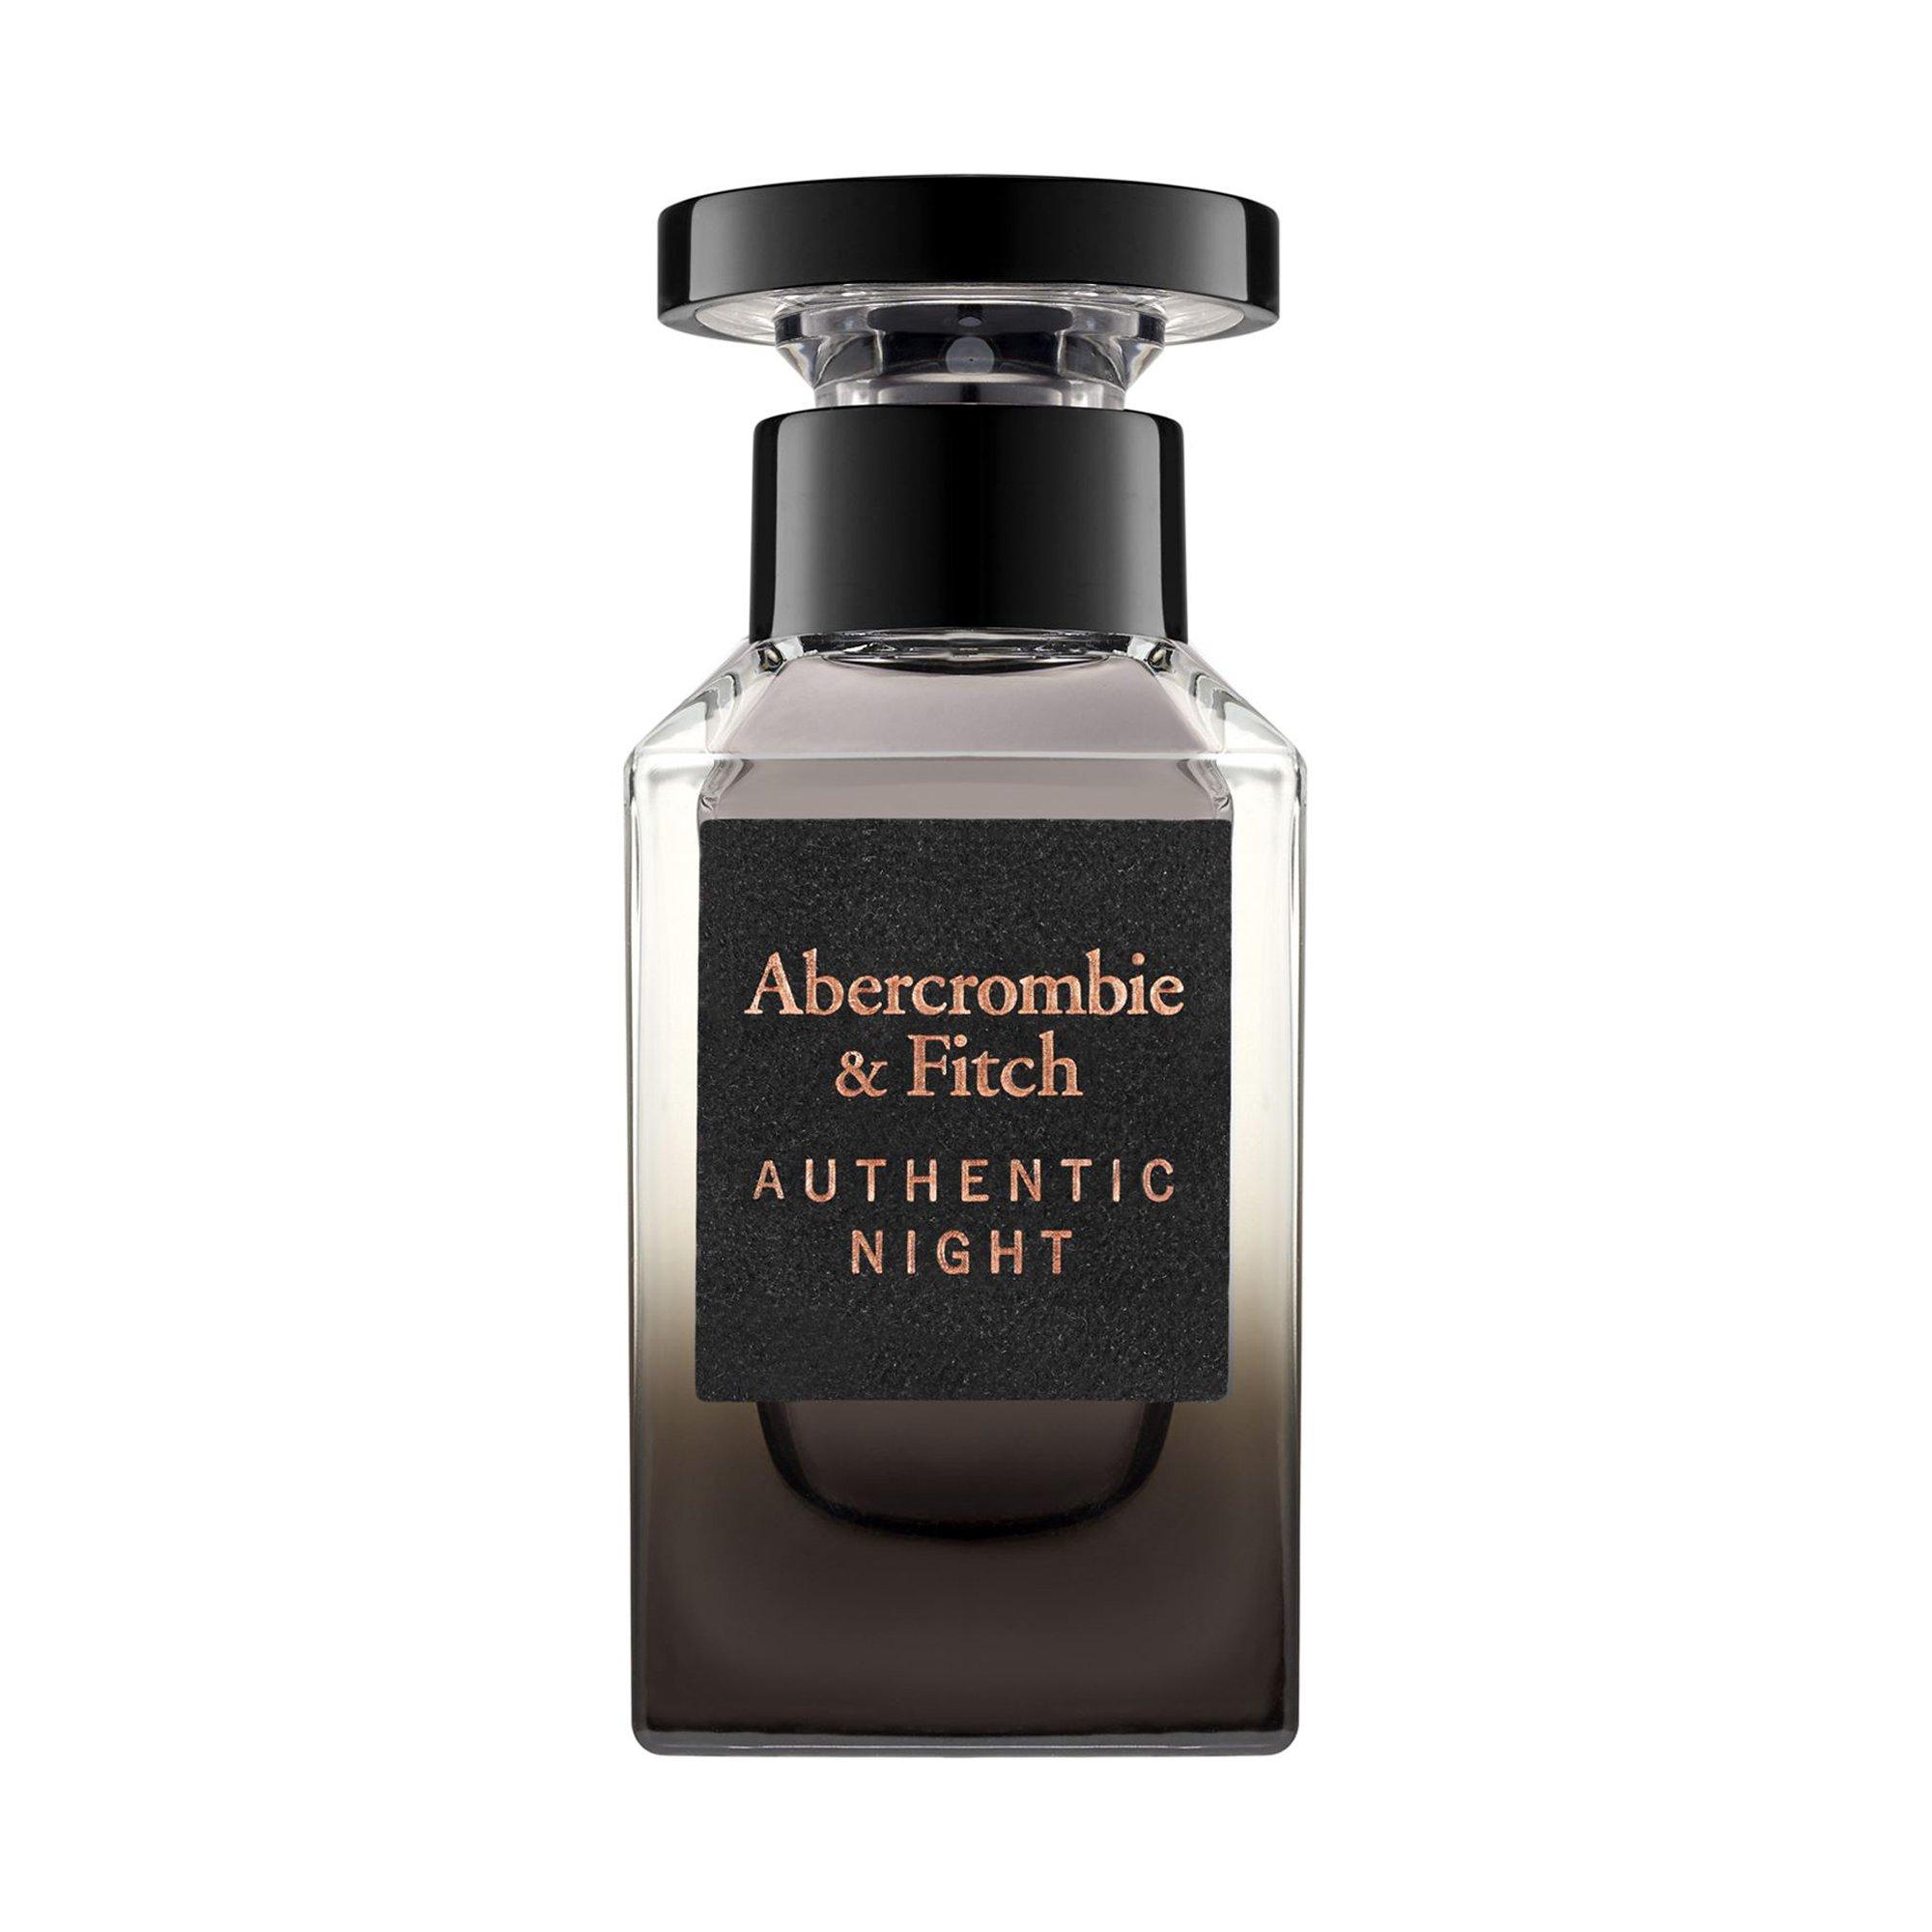 Image of Abercrombie & Fitch Authentic Night, Eau de Toilette - 50ml